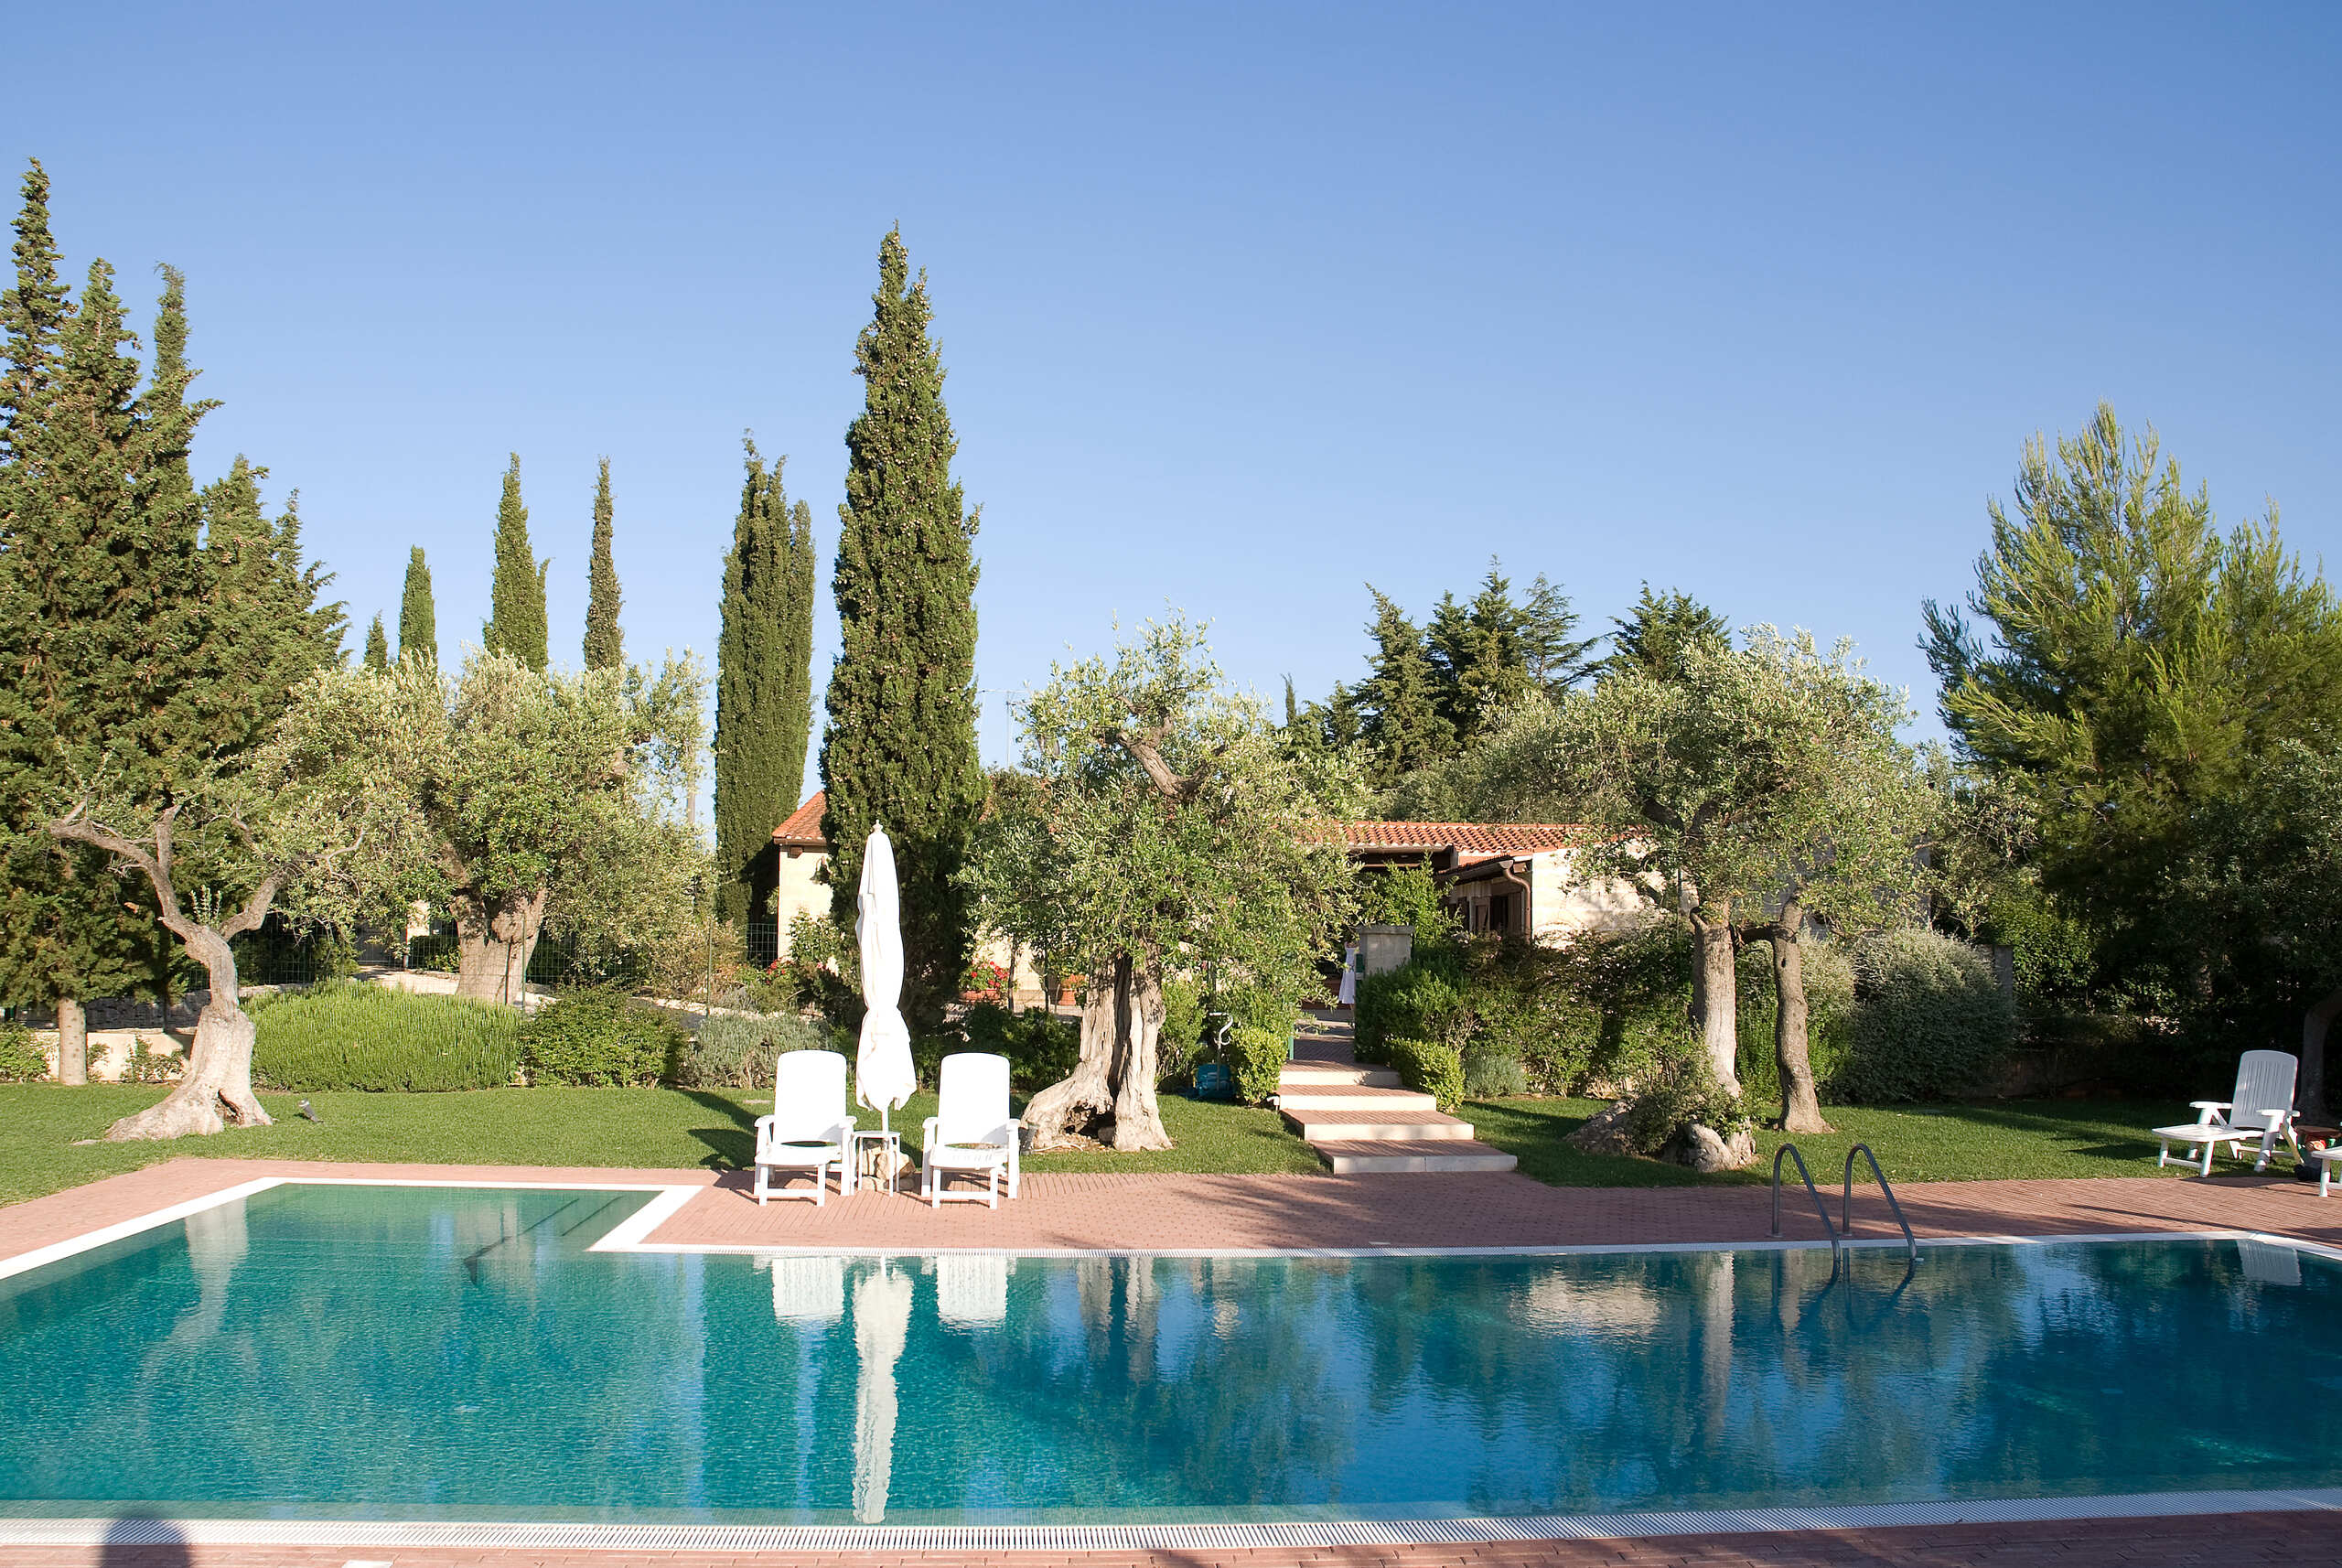 Se vende villa in zona tranquila Conversano Puglia